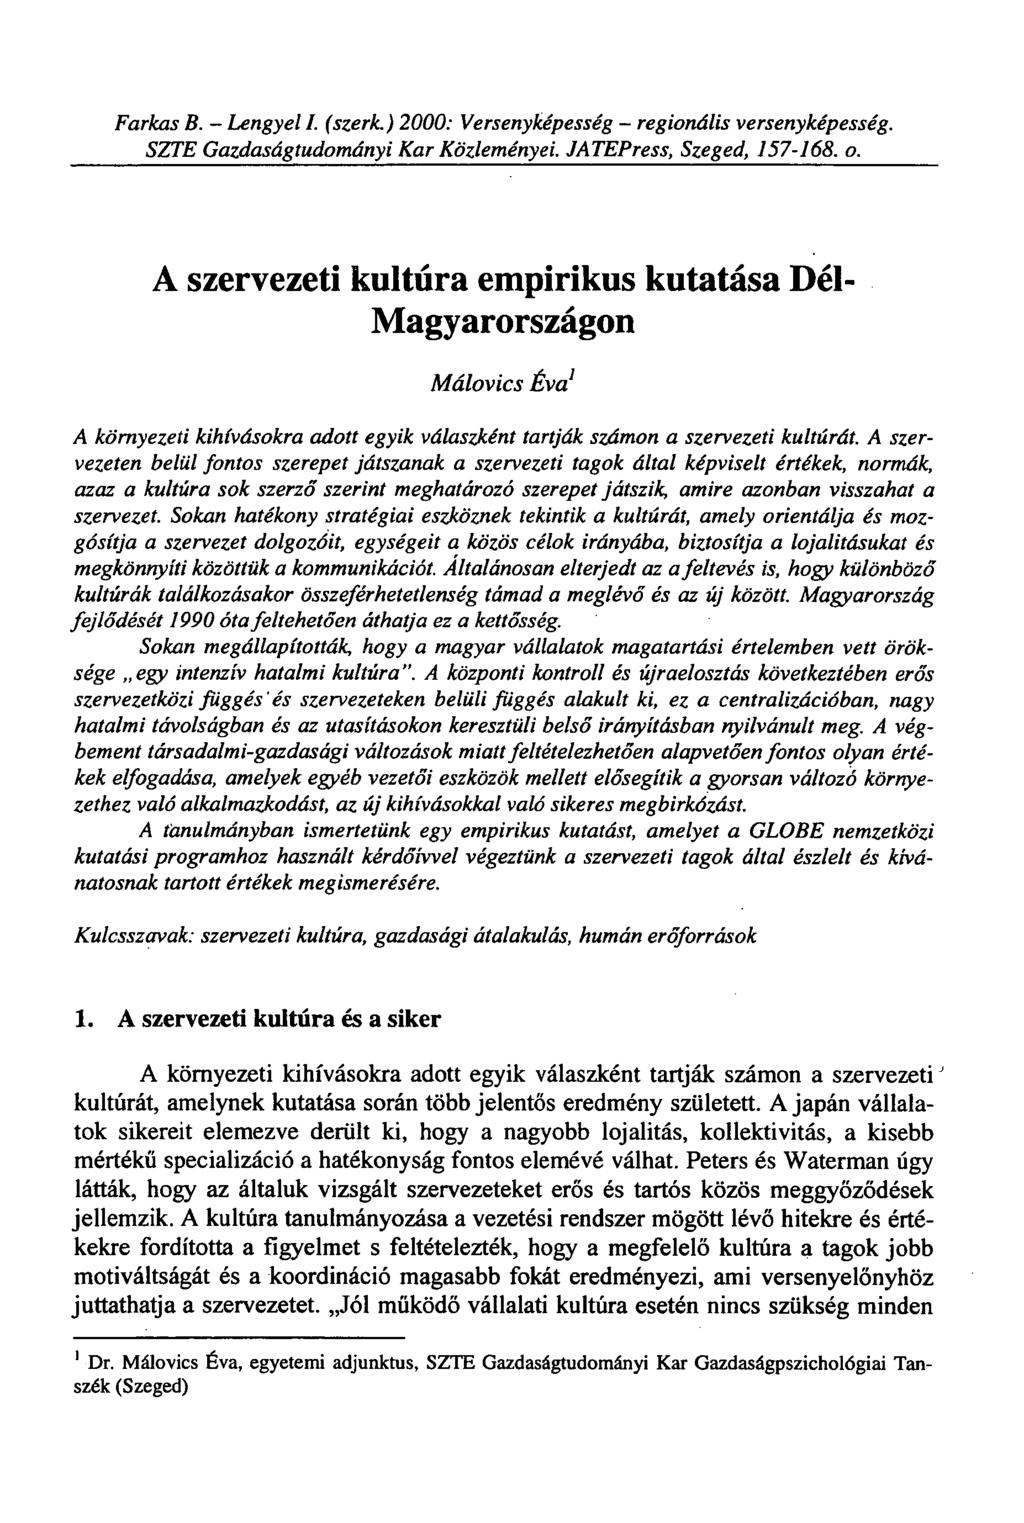 Farkas B. - Lengyel I. (szerk.) 2000: Versenyképesség - regionális versenyképesség. SZTE Gazdaságtudományi Kar Közleményei. JATEPress, Szeged, 157-114. o.